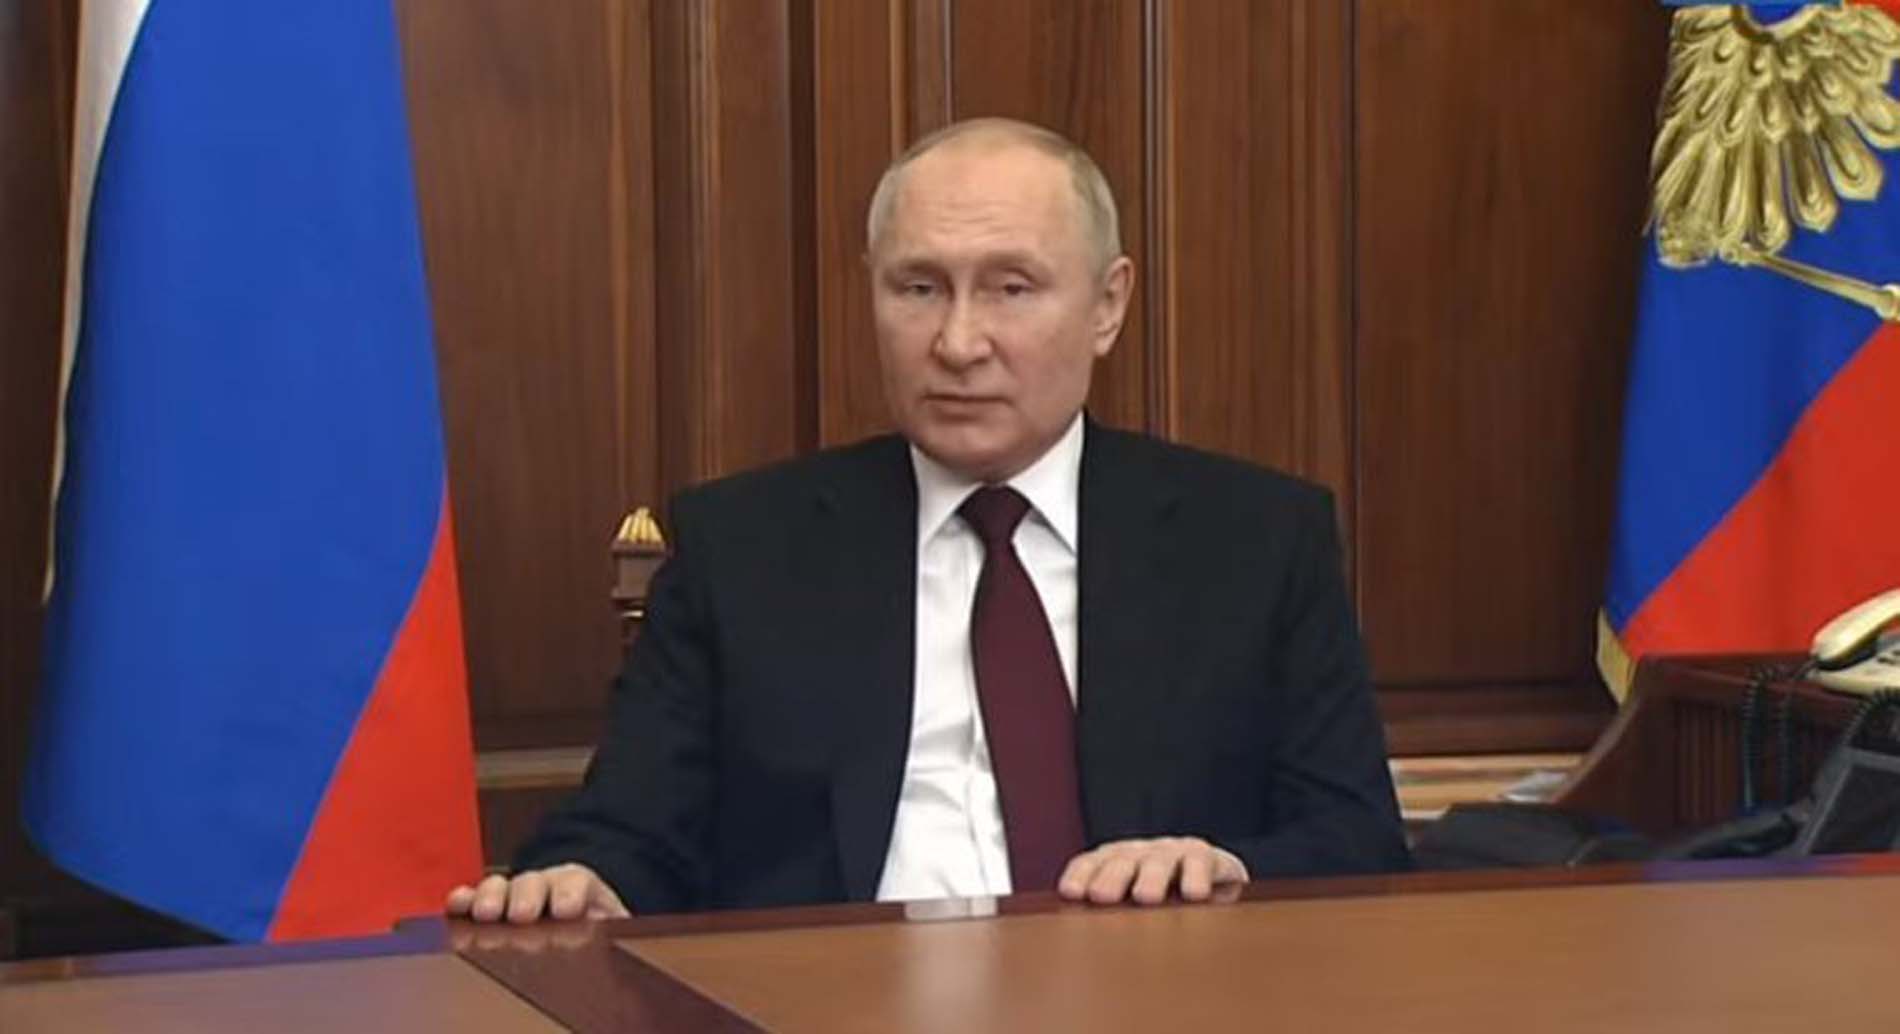 Putin canlı yayında ulusa sesleniş yaptı! Donetsk ve Luhansk devletlerini resmen tanıdığını duyurdu!